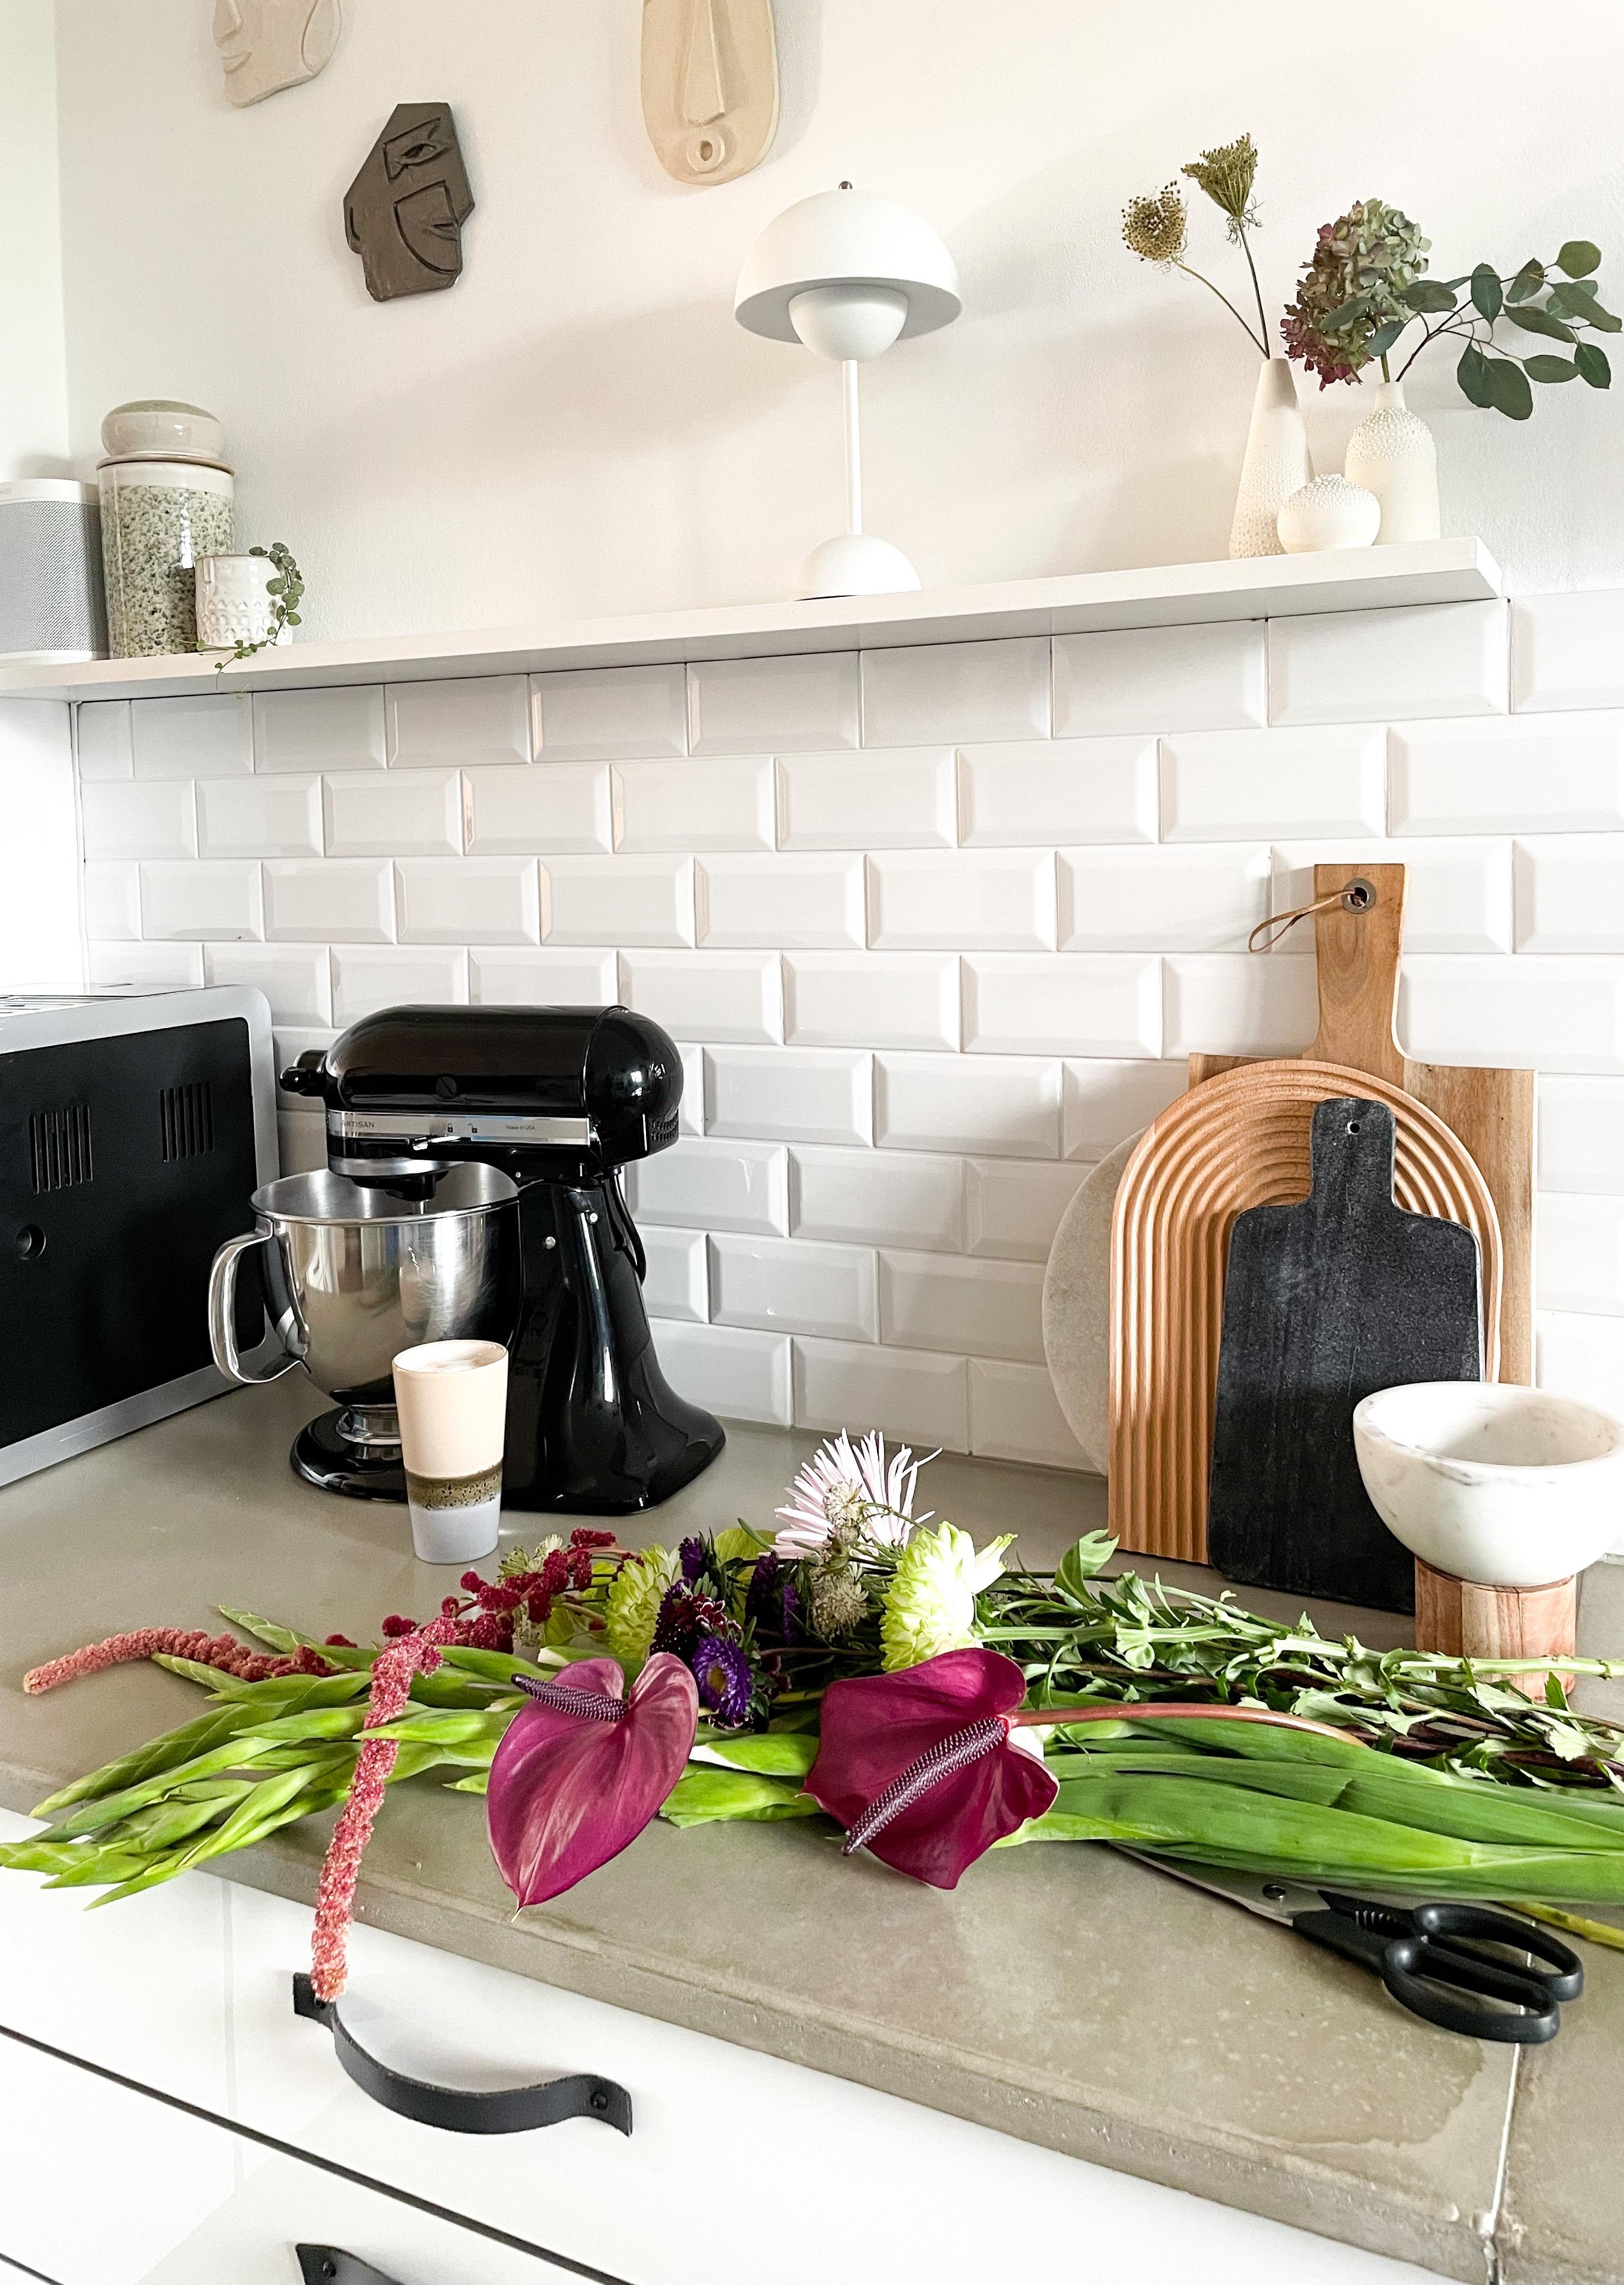 Wochenende! Zeit für die wichtigen Dinge ...🌿

#Küche #Küchenaccessoires #Blumen